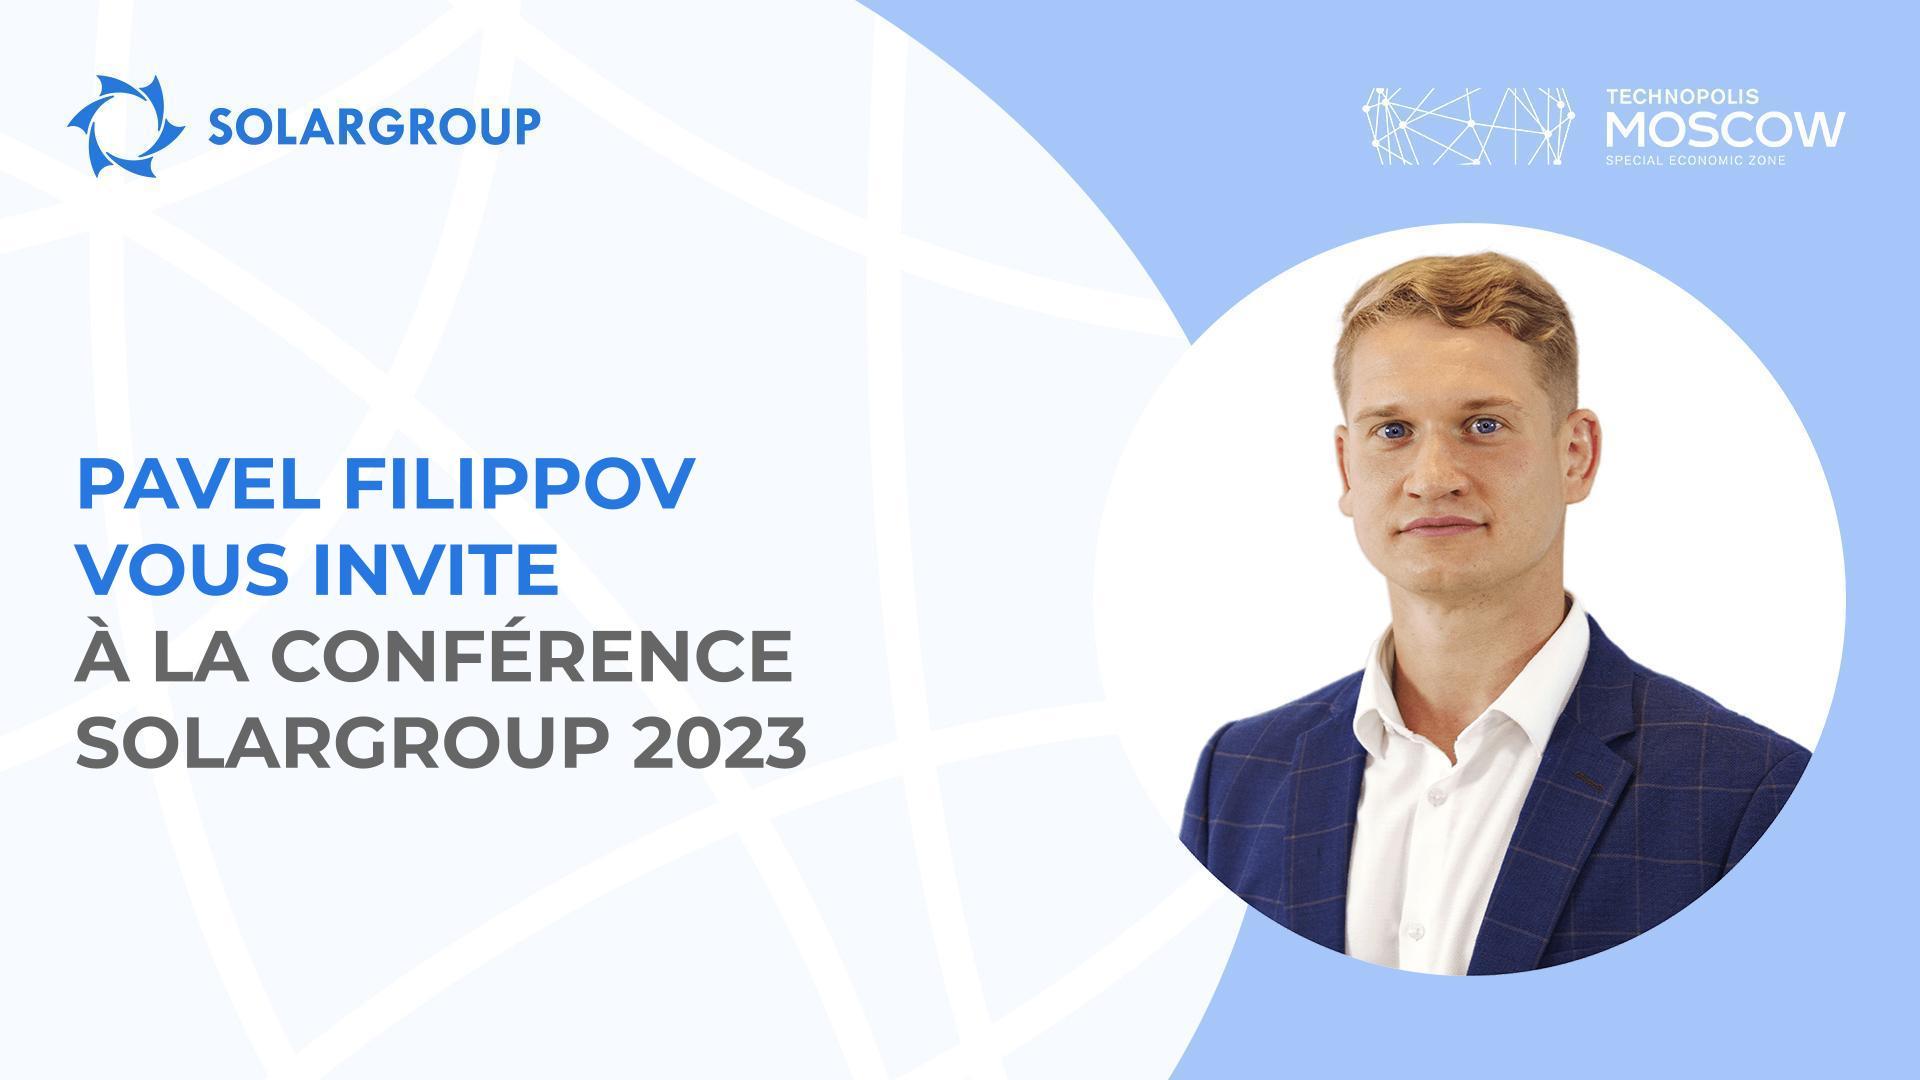 "Tous les investisseurs et les partenaires du projet l'attendent" : Pavel FILIPPOV parle de la prochaine conférence SOLARGROUP